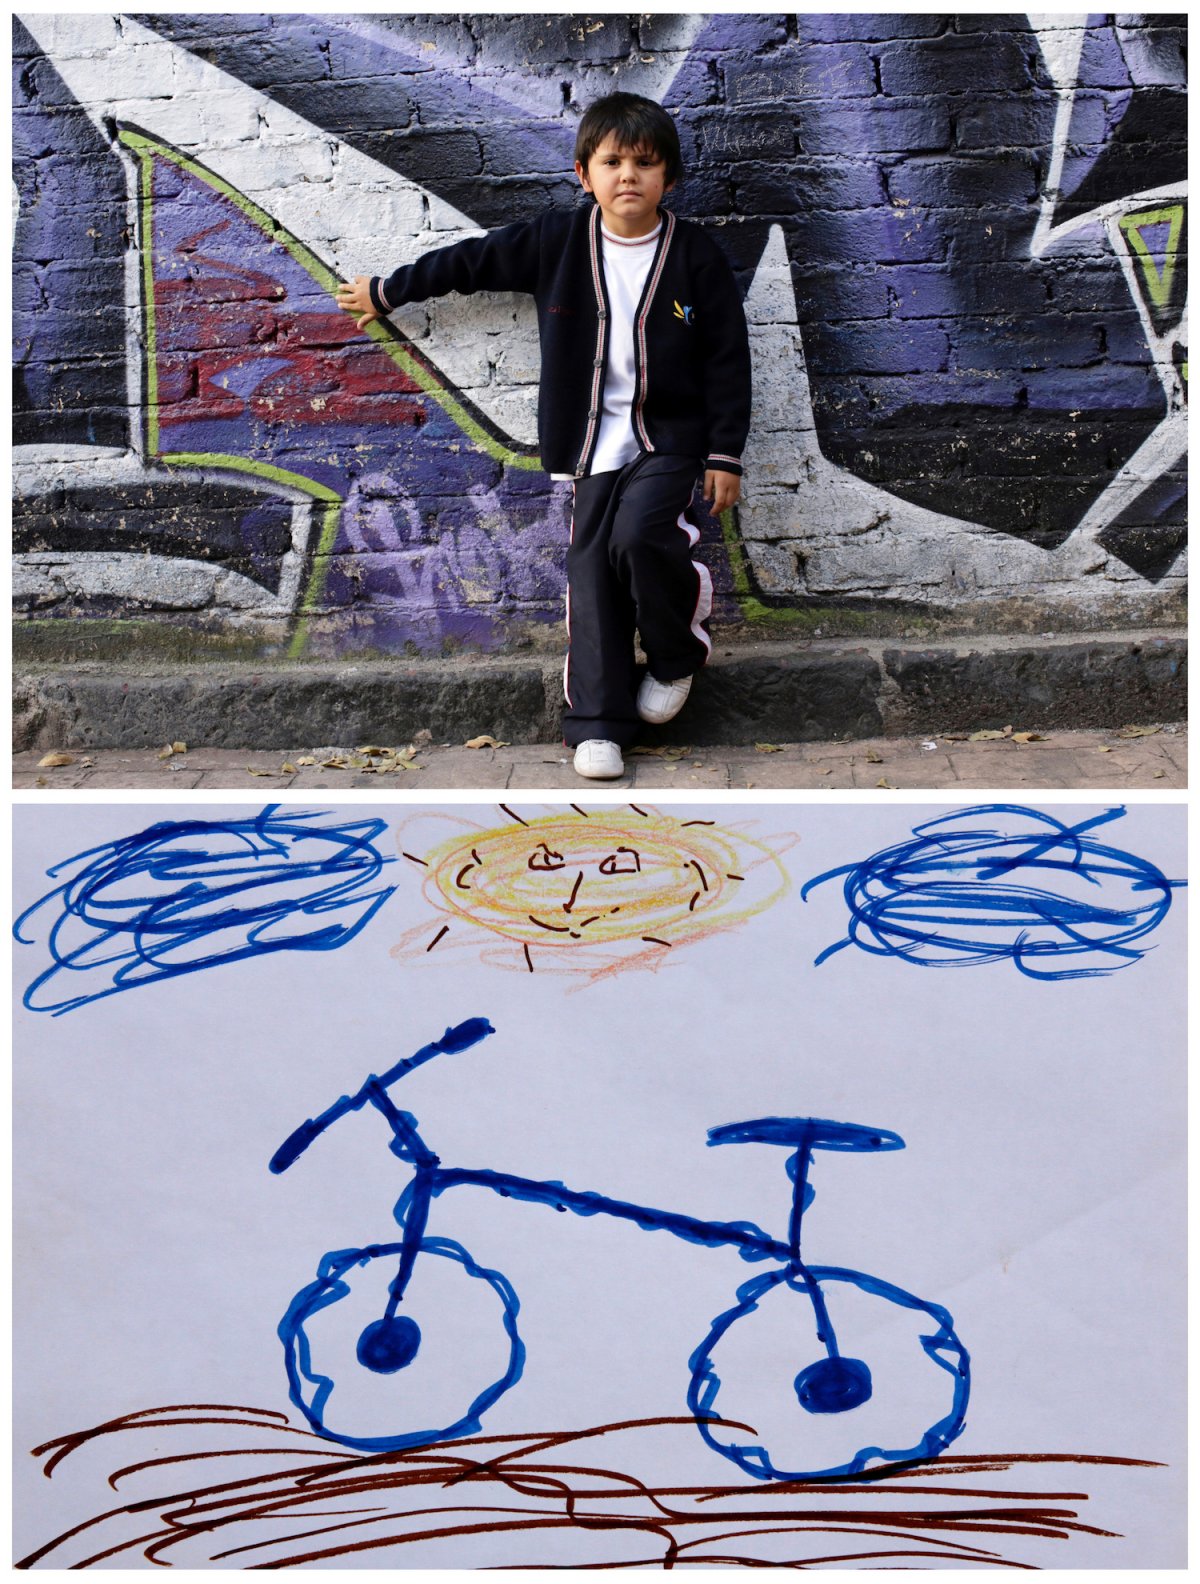 10. Шестилетний Матиас из Мексики просит у Санты велосипед.